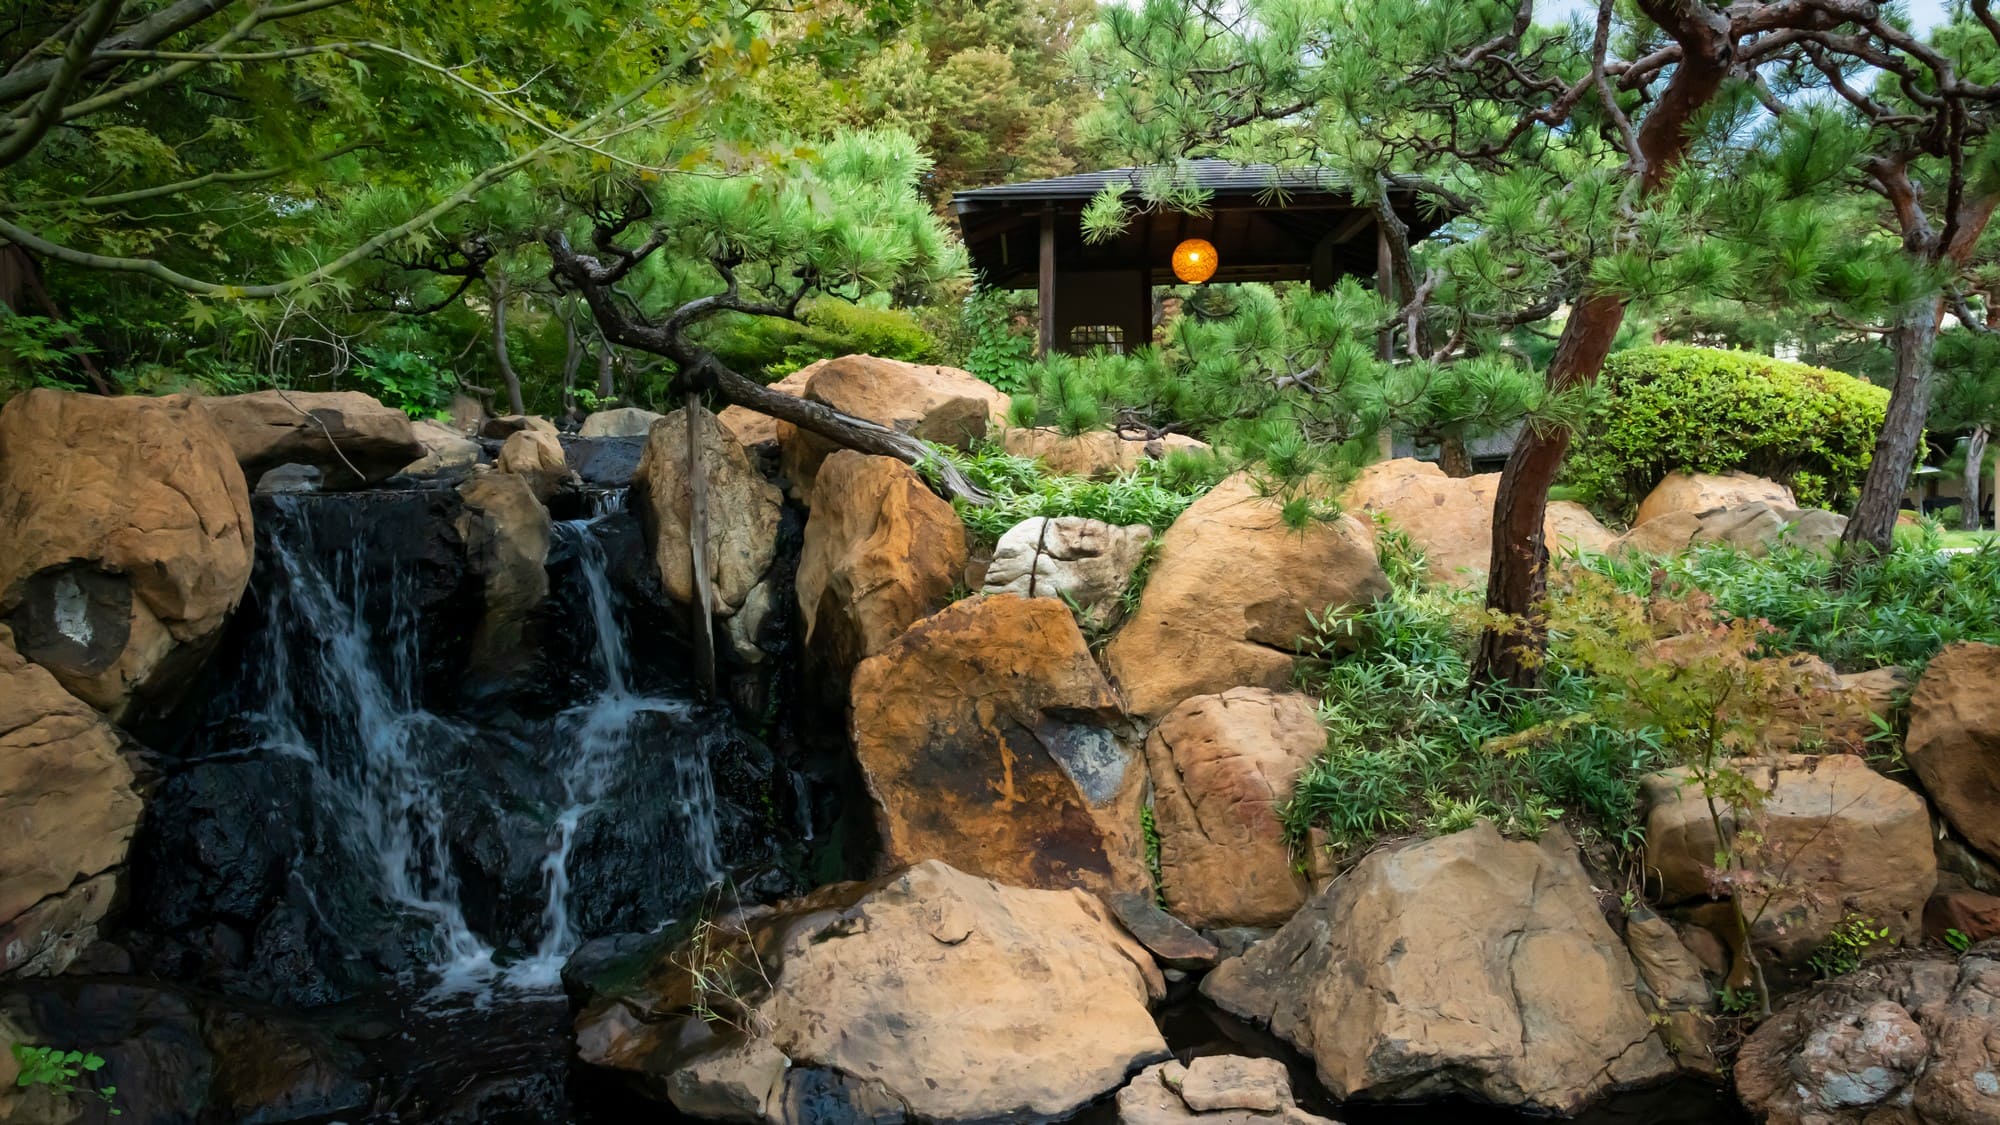 松を基調とした情緒豊かな日本庭園